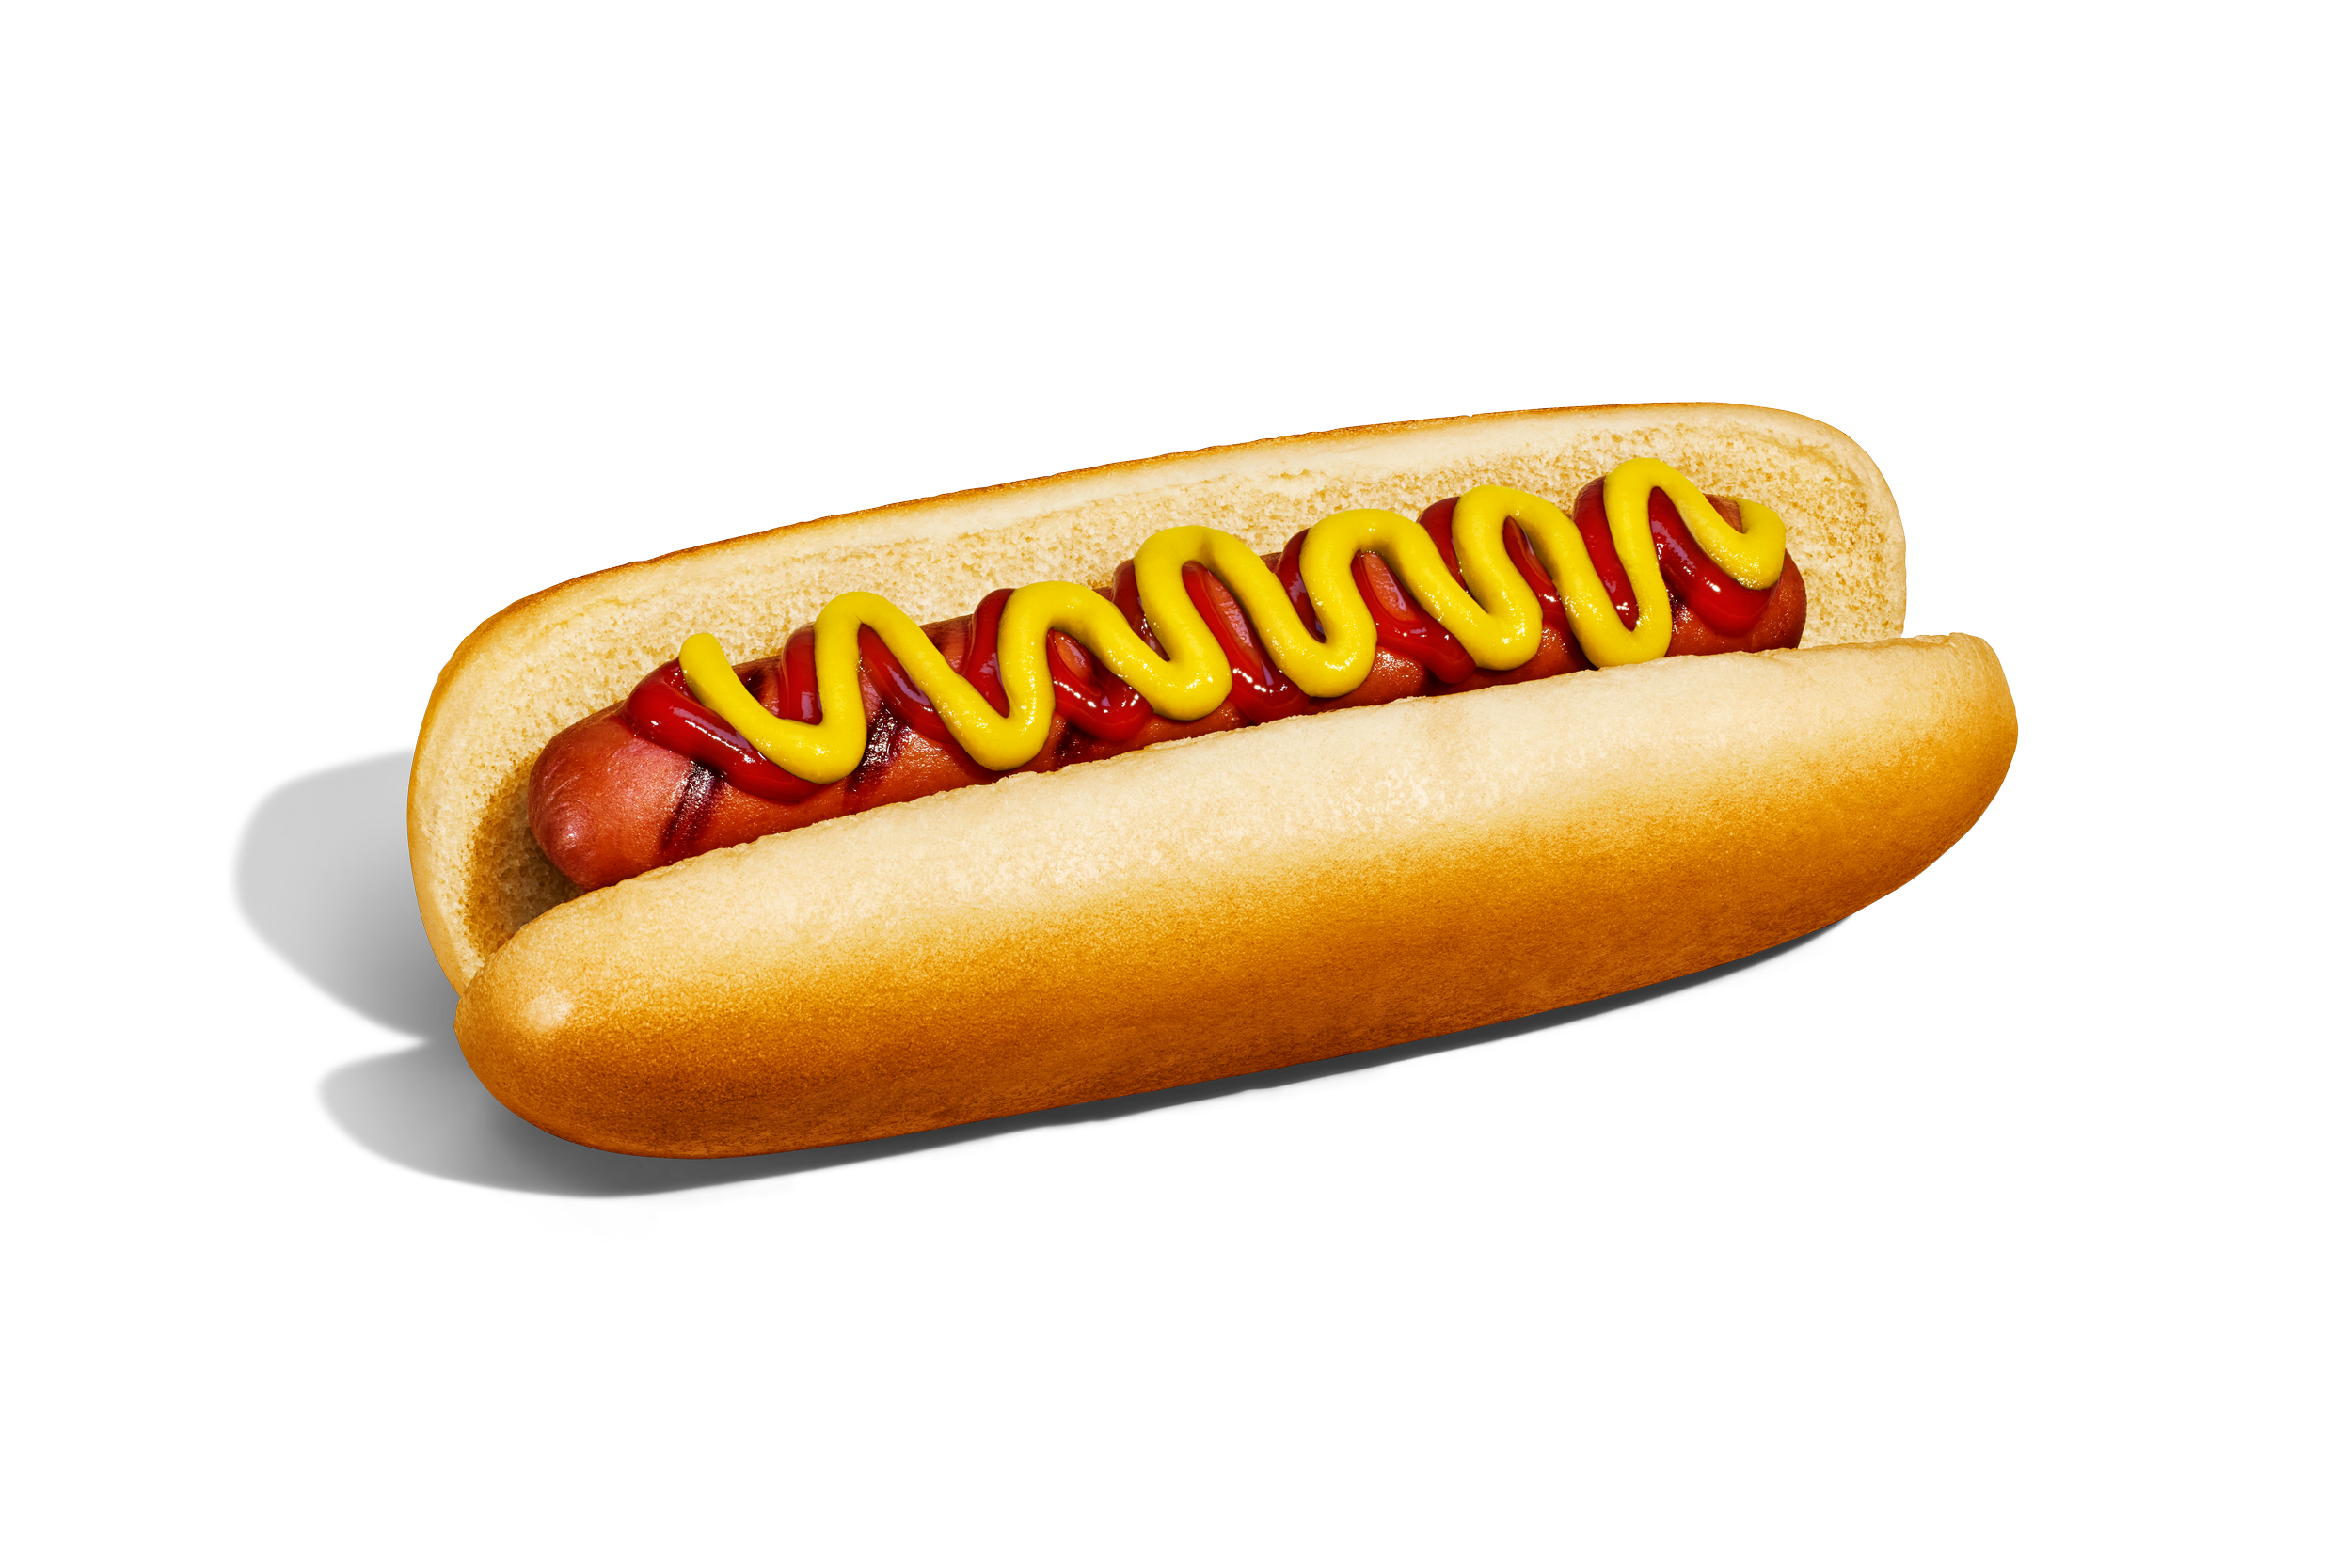 816697020661-Hot Dogs-Cutout 1 Ketchup Mustard_0138_230622_final-2.png